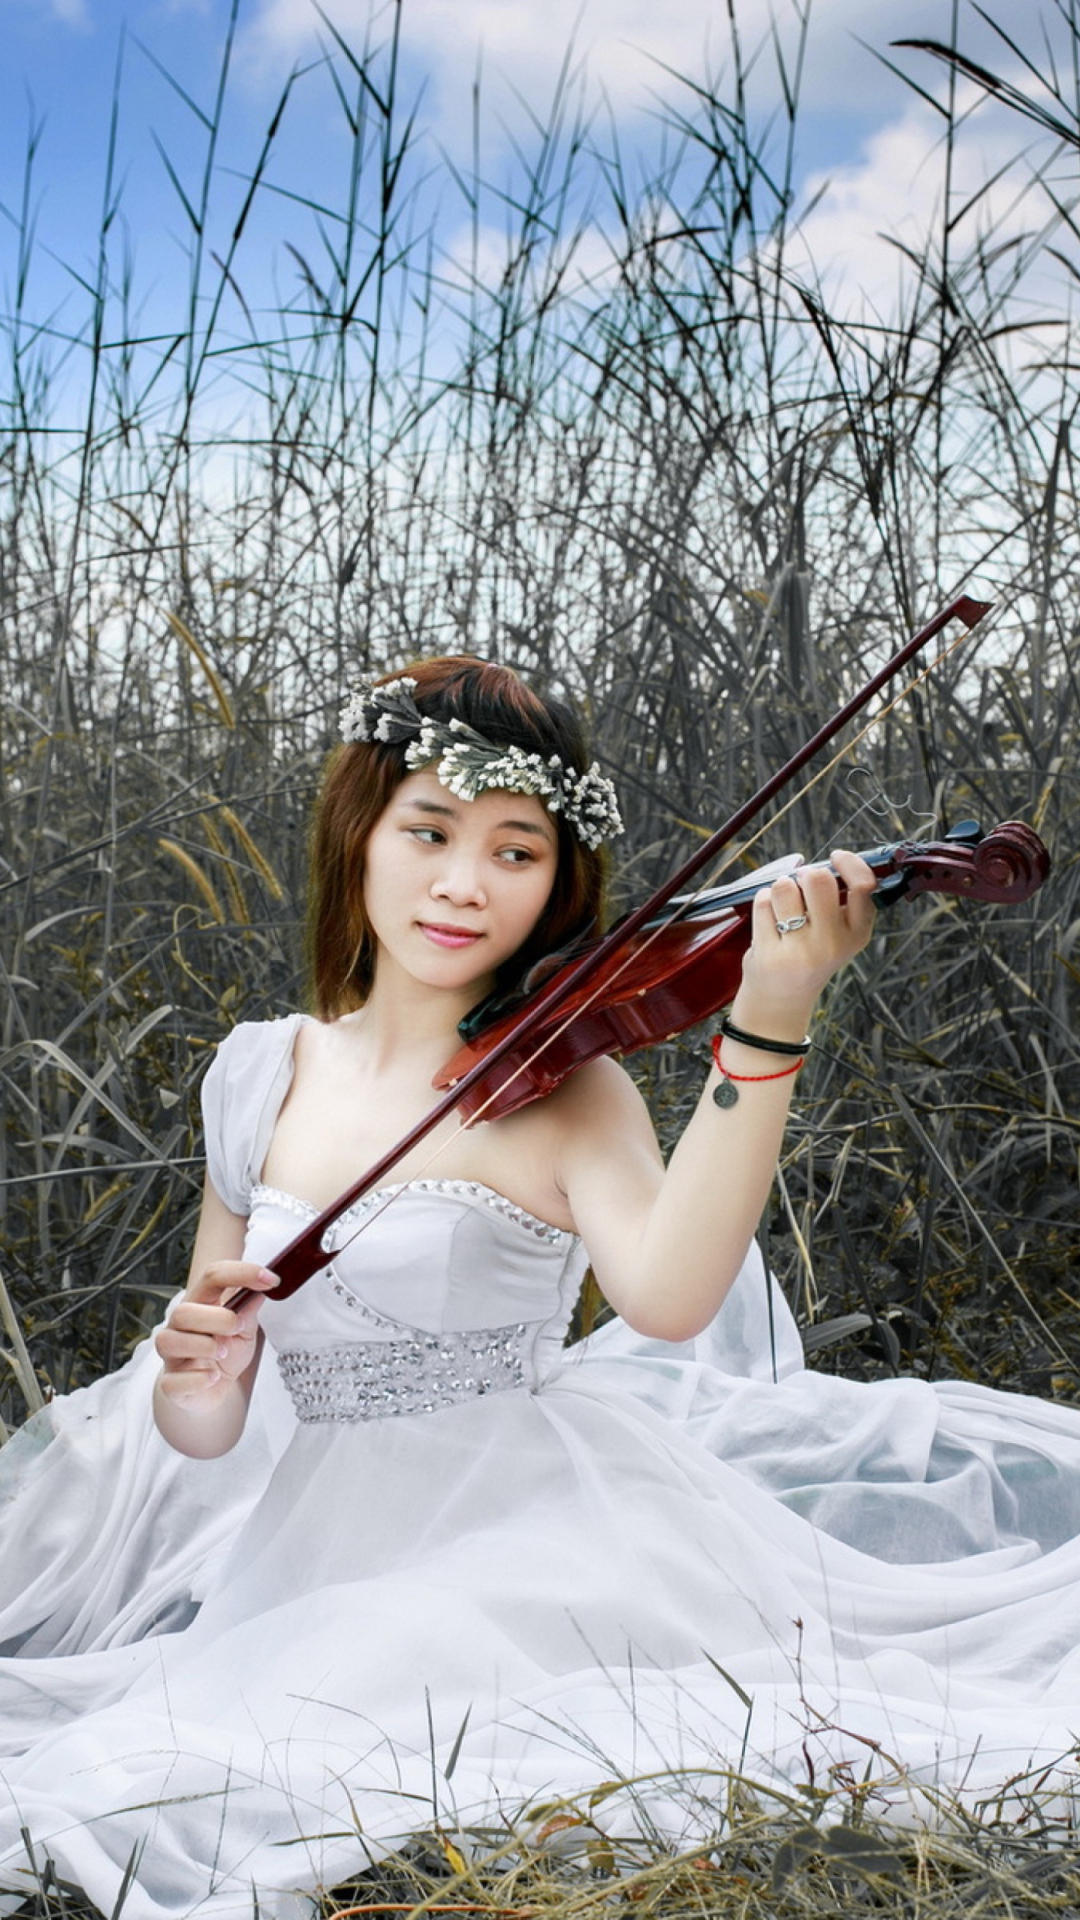 Sfondi Asian Girl Playing Violin 1080x1920